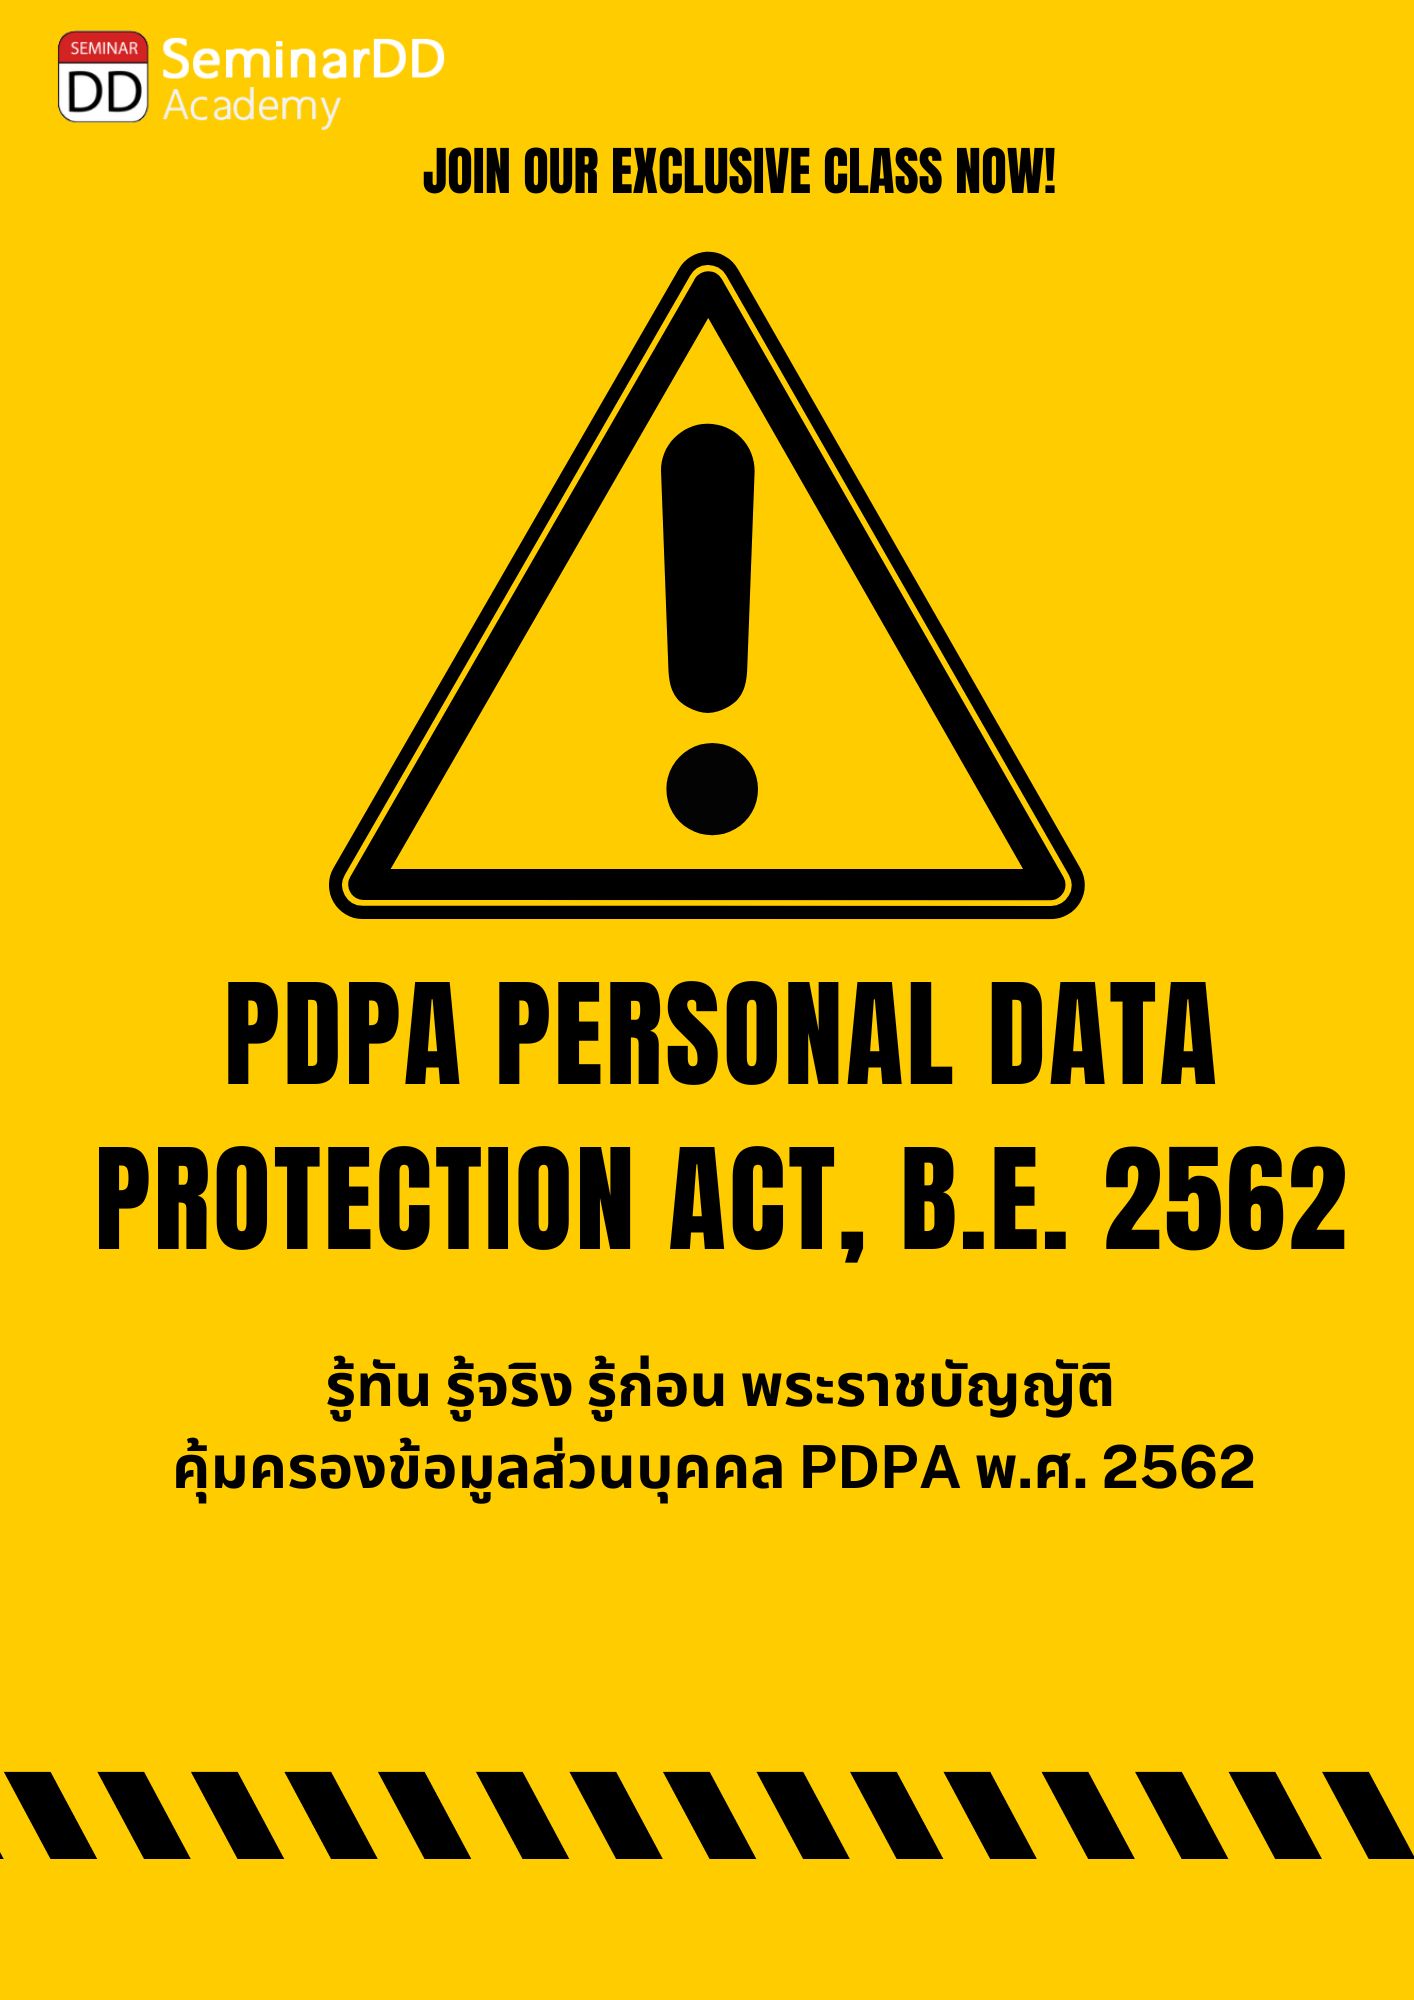 รู้ทัน รู้จริง รู้ก่อน พระราชบัญญัติคุ้มครองข้อมูลส่วนบุคคล พ.ศ. 2562 - PDPA (Personal Data Protection Act, B.E. 2562)